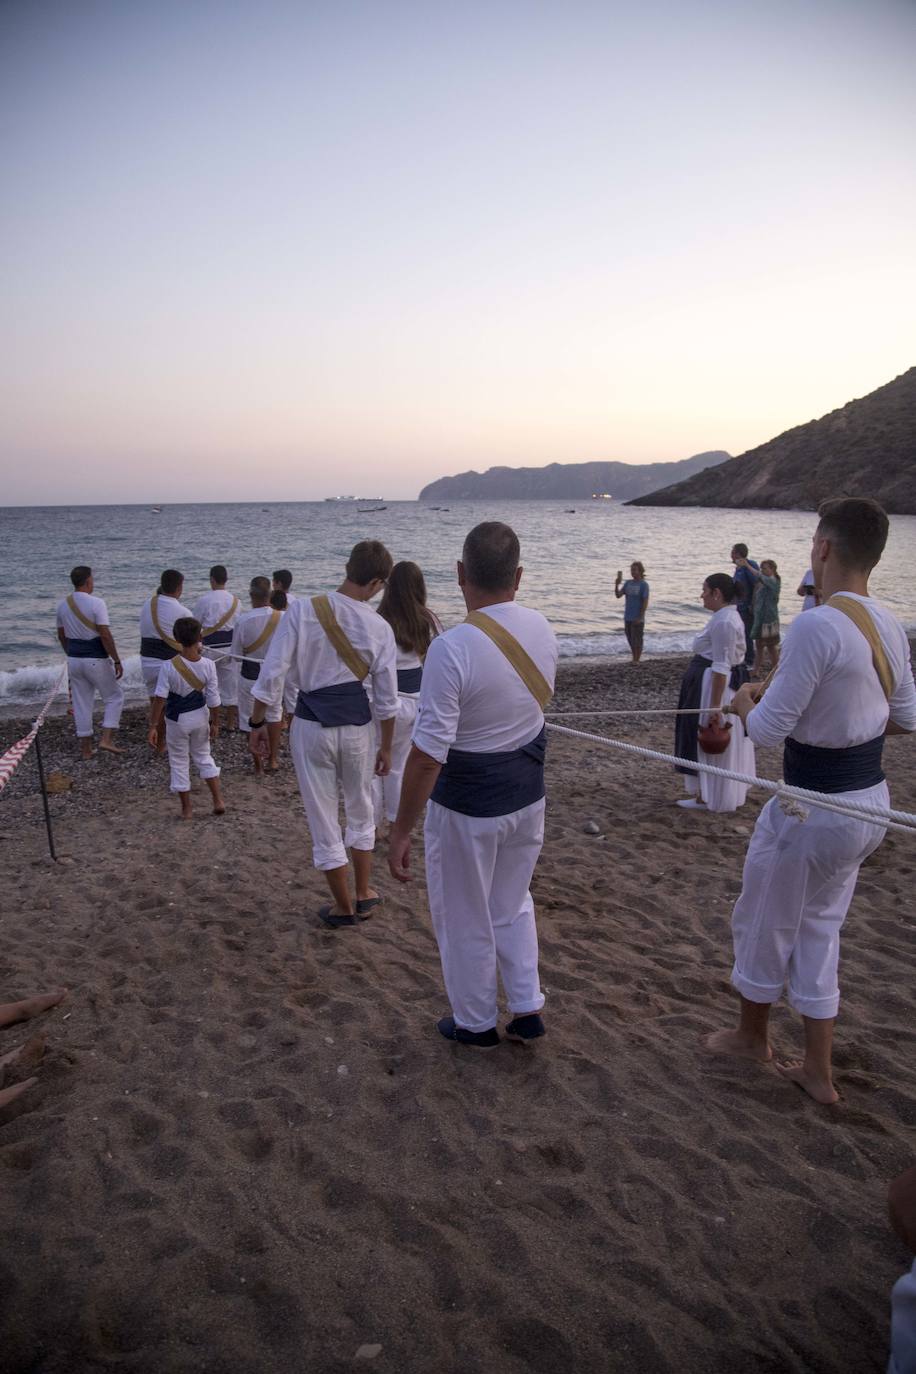 La playa de El Portús acogió el sábado una jornada marinera, que incluyó la recreación de la cala y recogida de la jábega